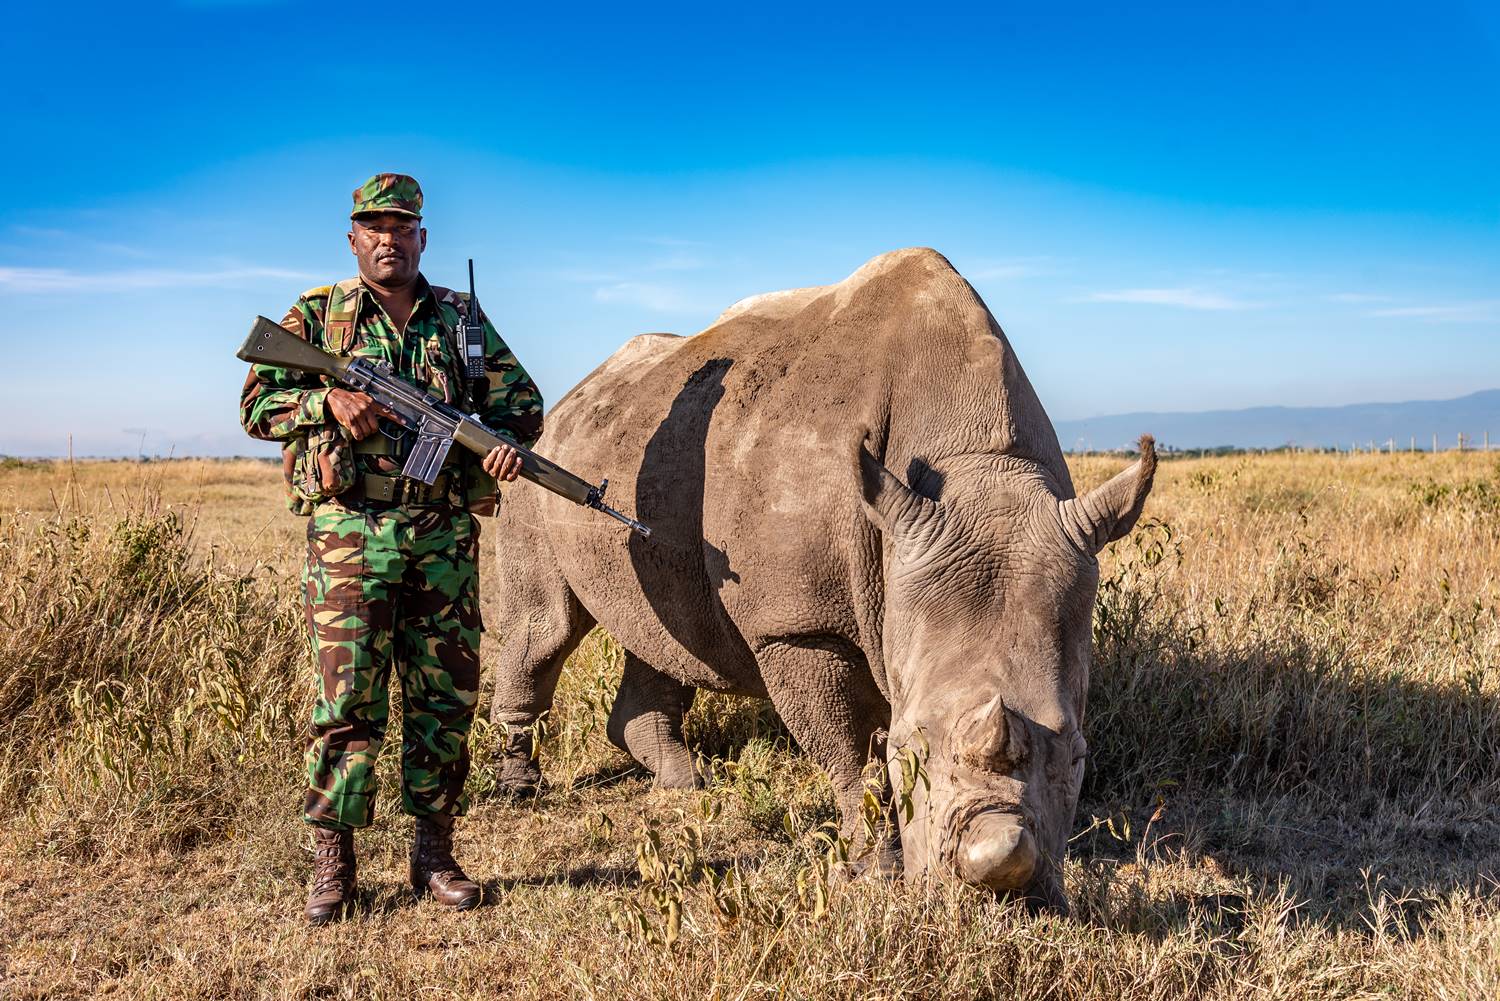 Protecting Ol Pejeta, Kenya